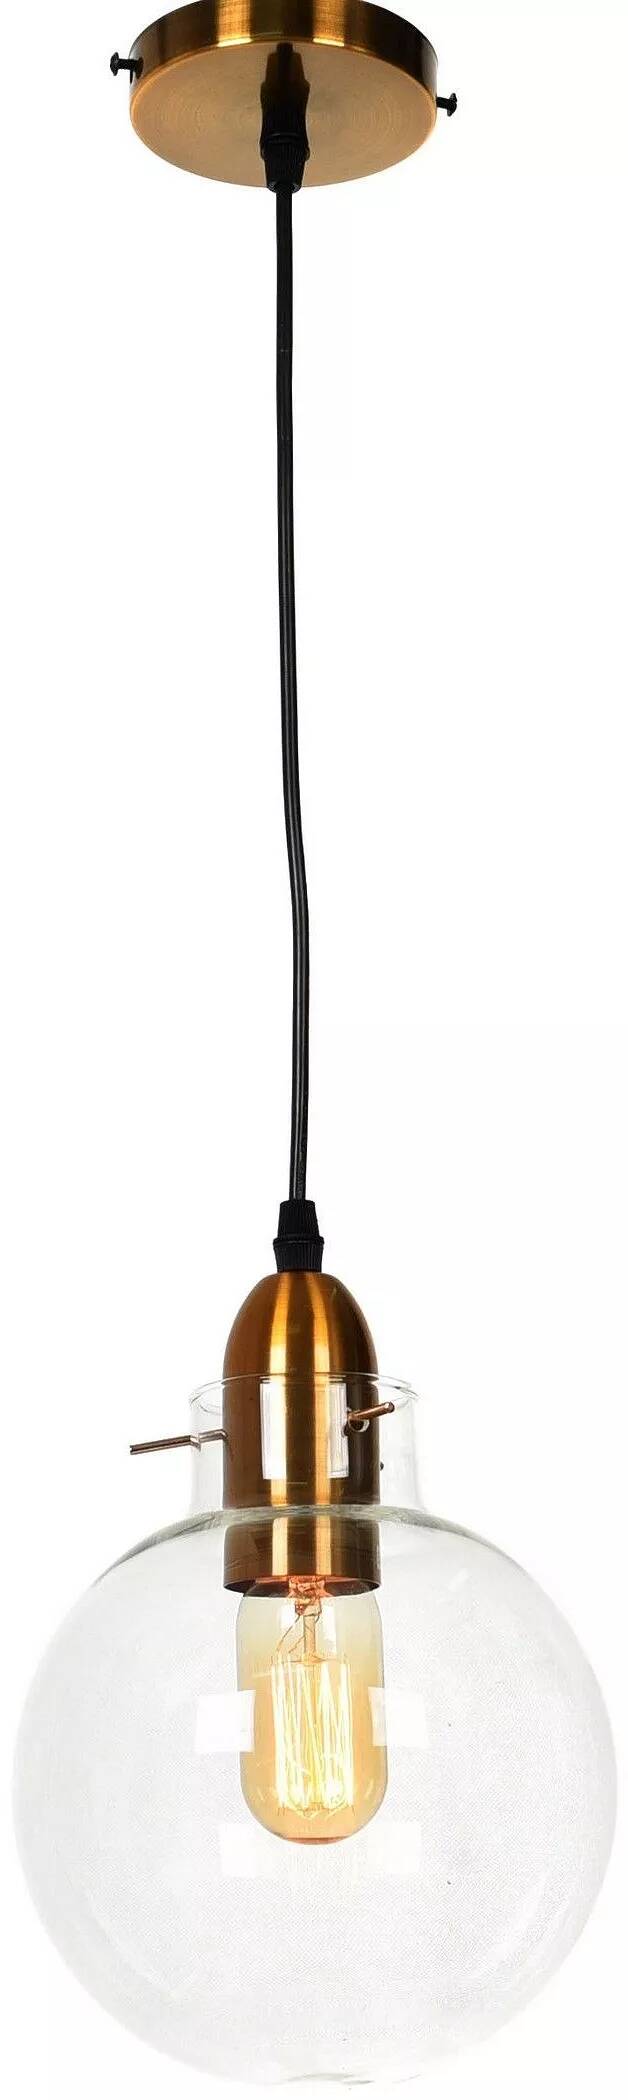 Lampe suspension en verre et métal doré Ø17